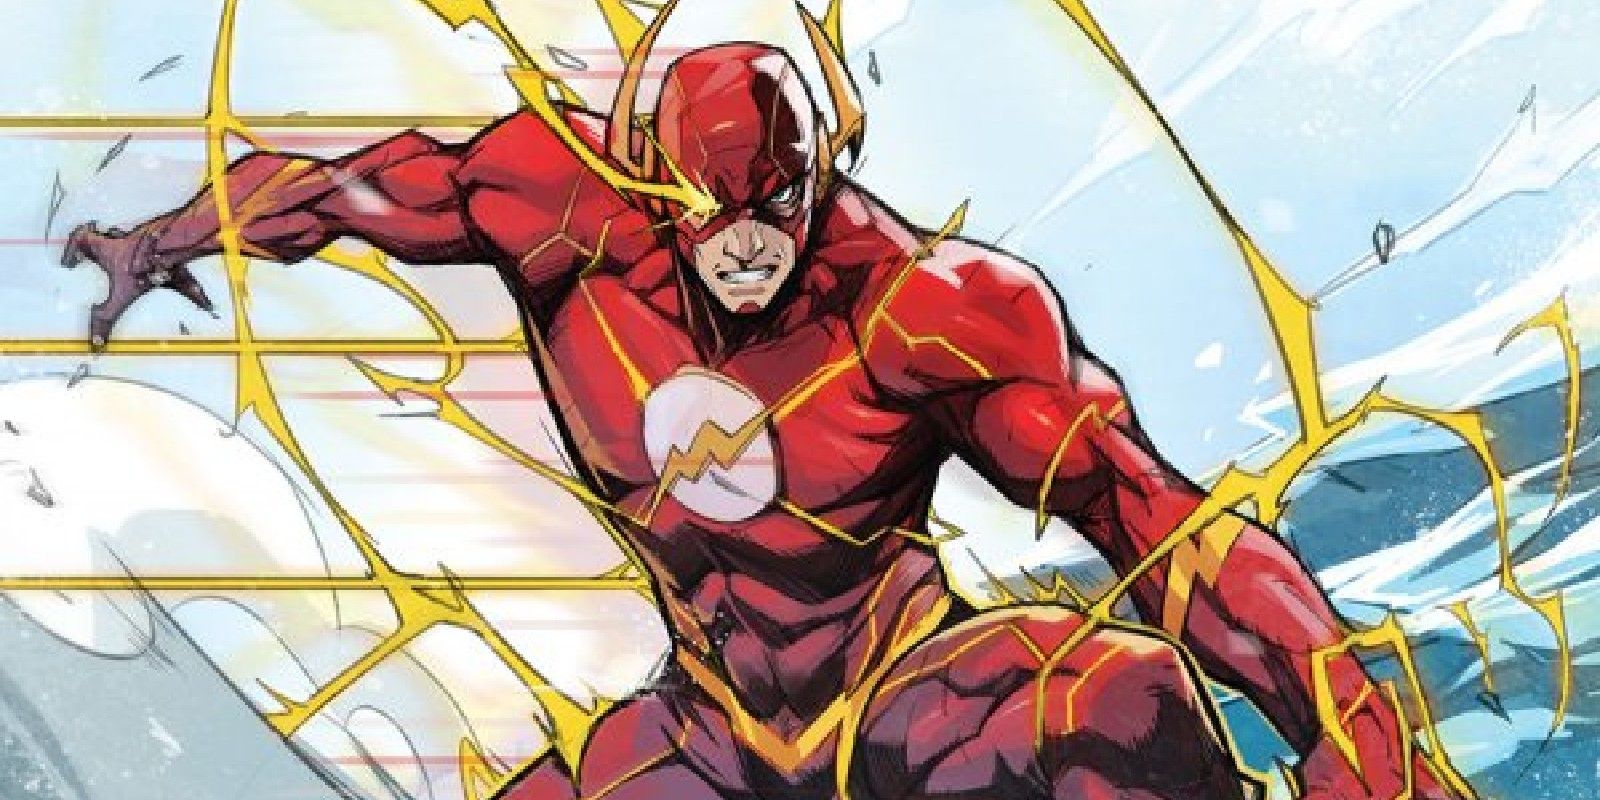 El vergonzoso papel de Flash en la Liga de la Justicia tiene un efecto secundario de clasificación R